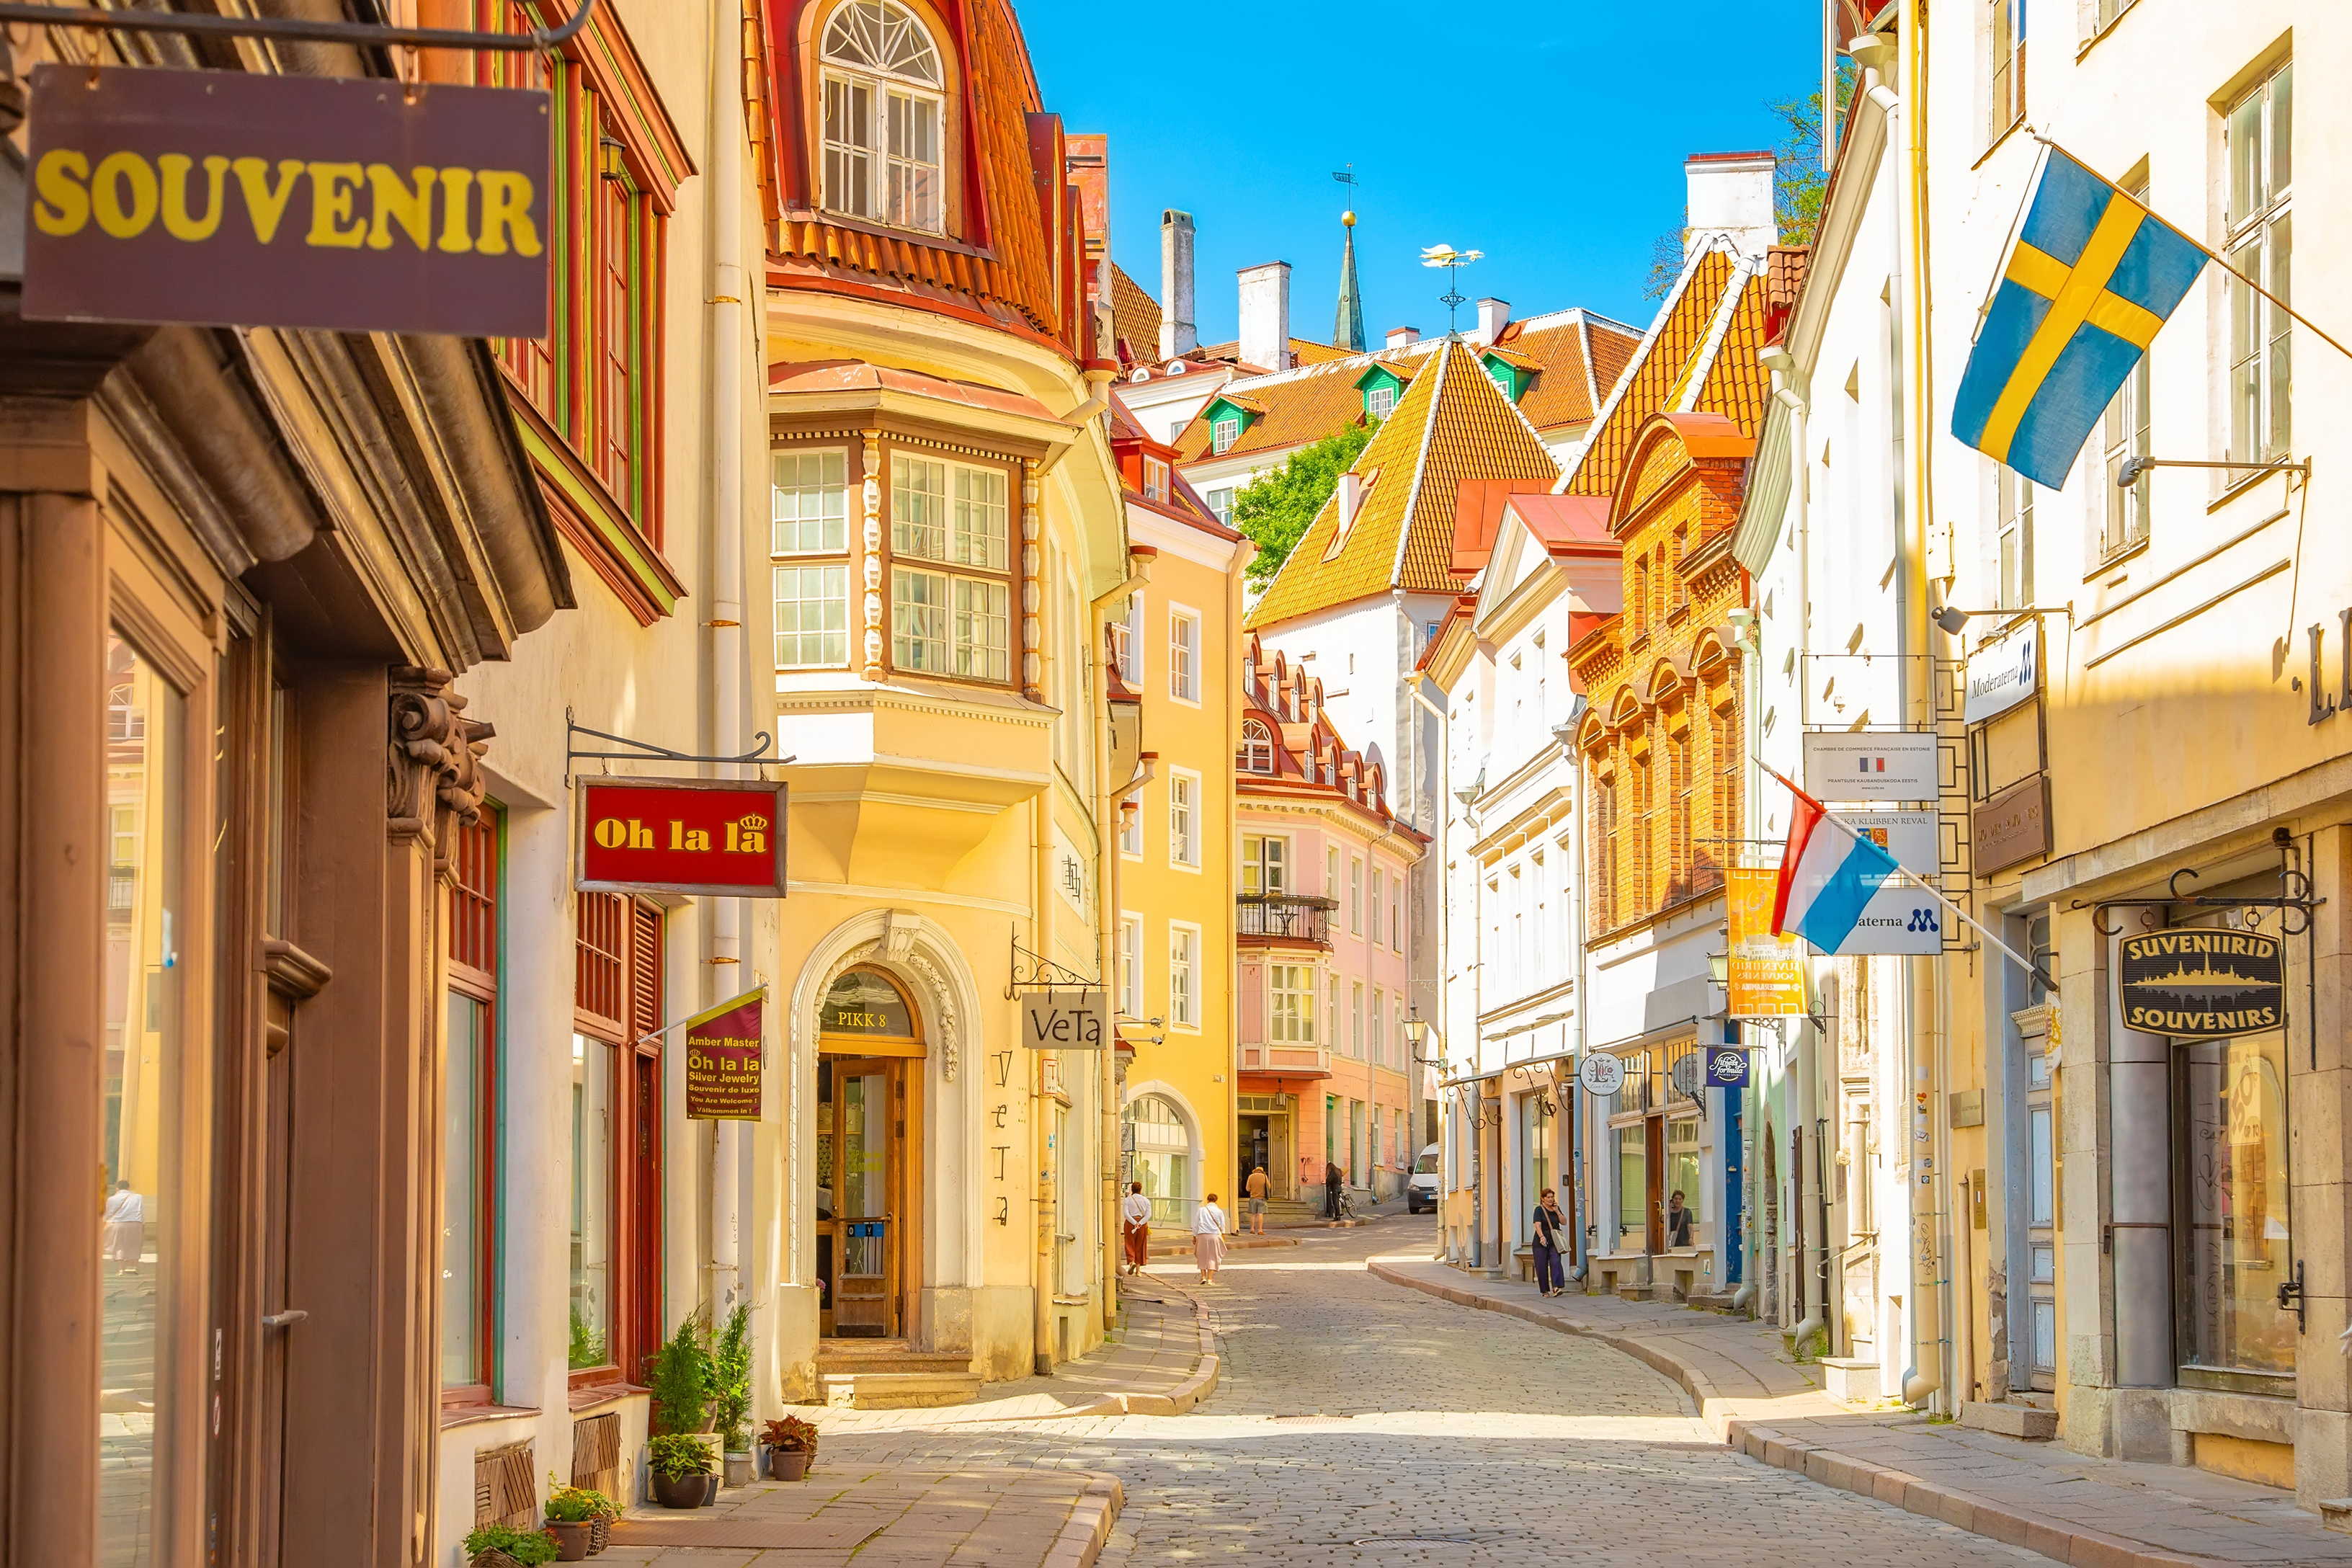 Эстония, где возможно получение эстонского гражданства для иностранцев